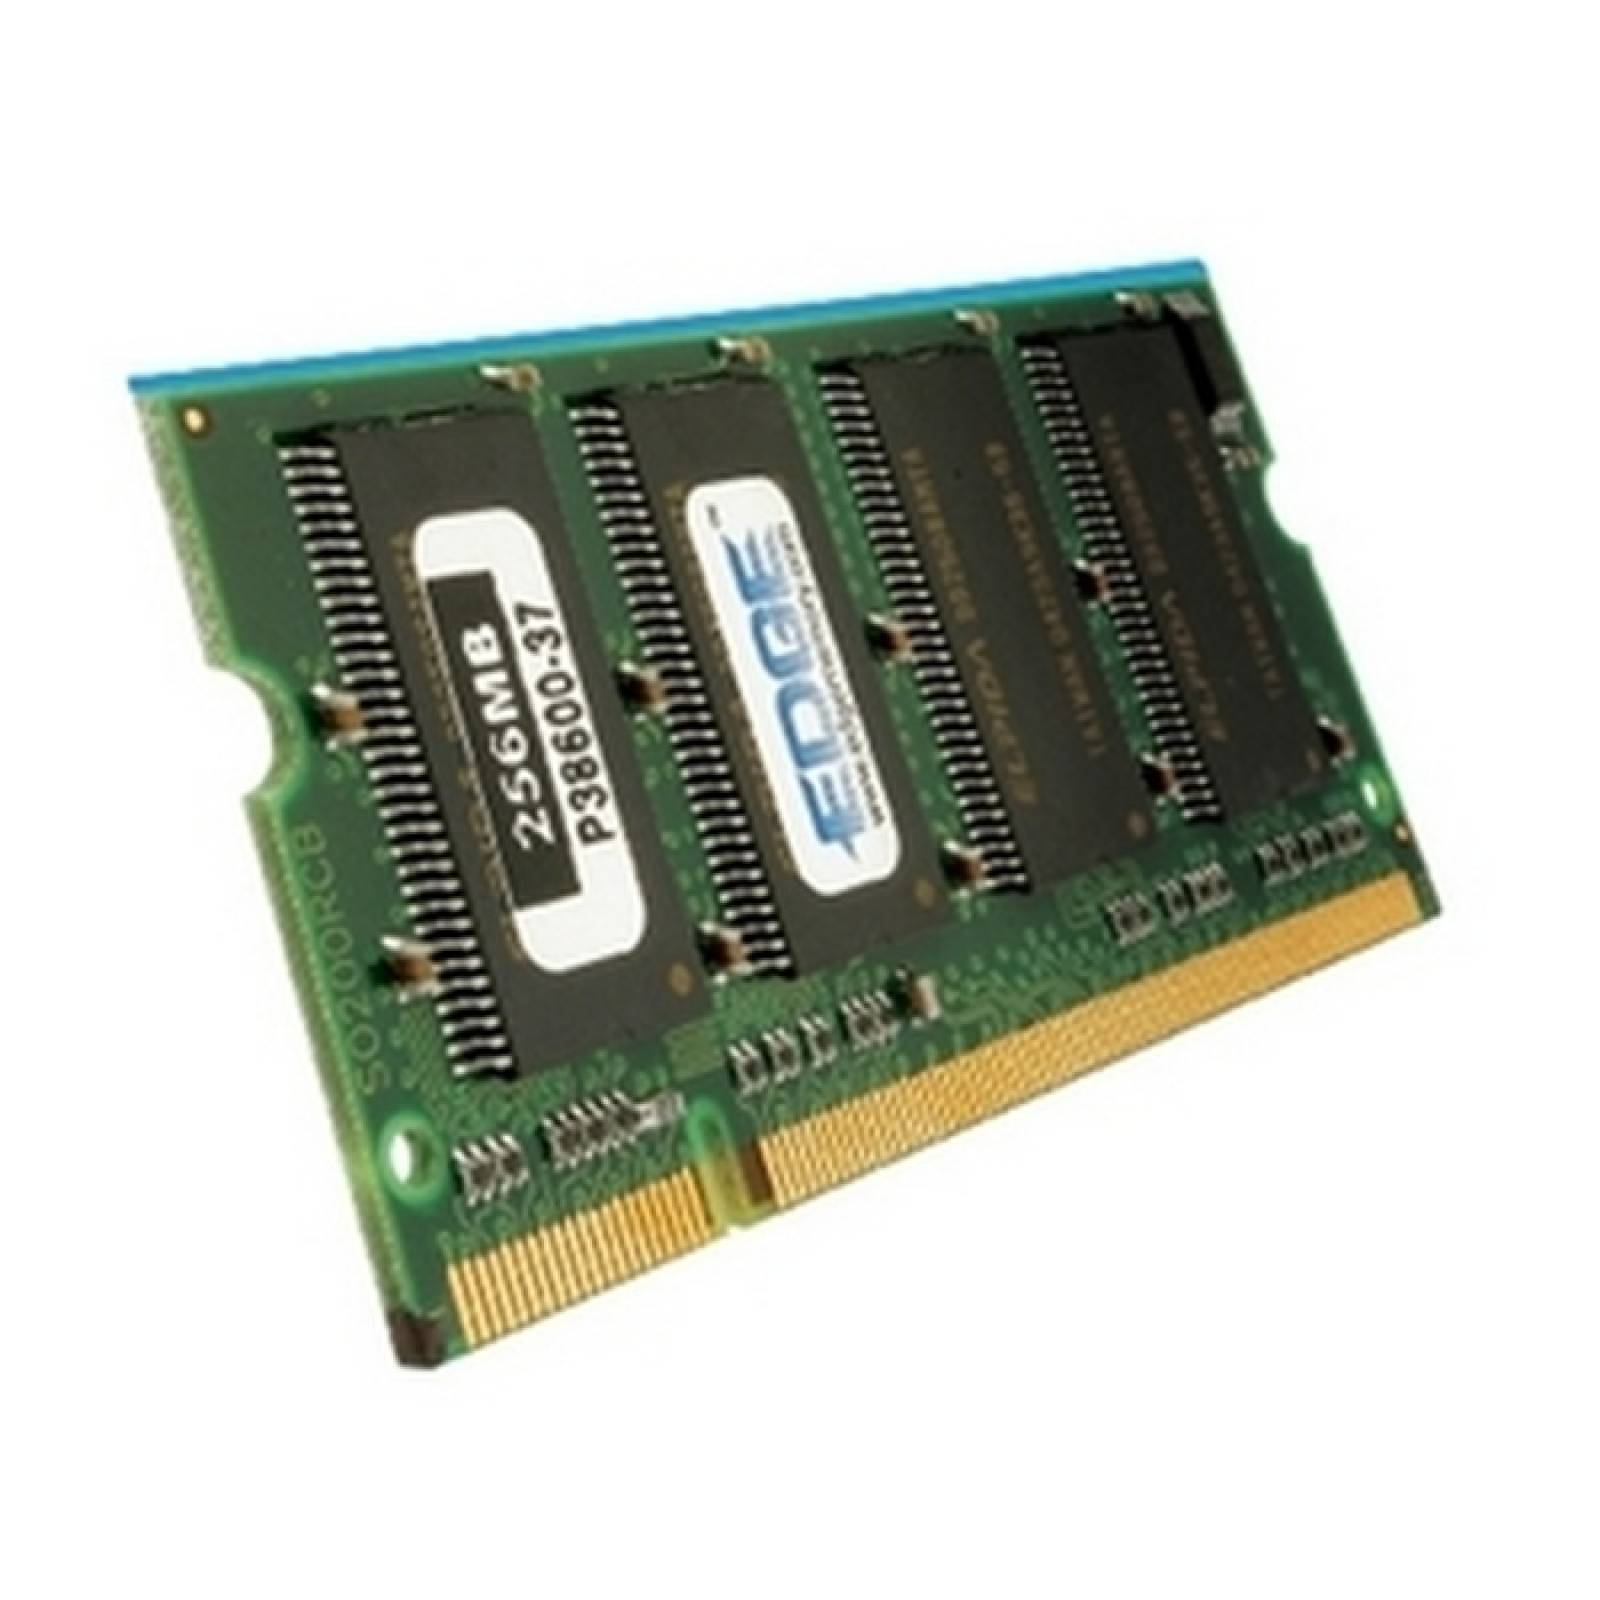 Mdulo de memoria EDGE Tech 1GB DDR2 SDRAM